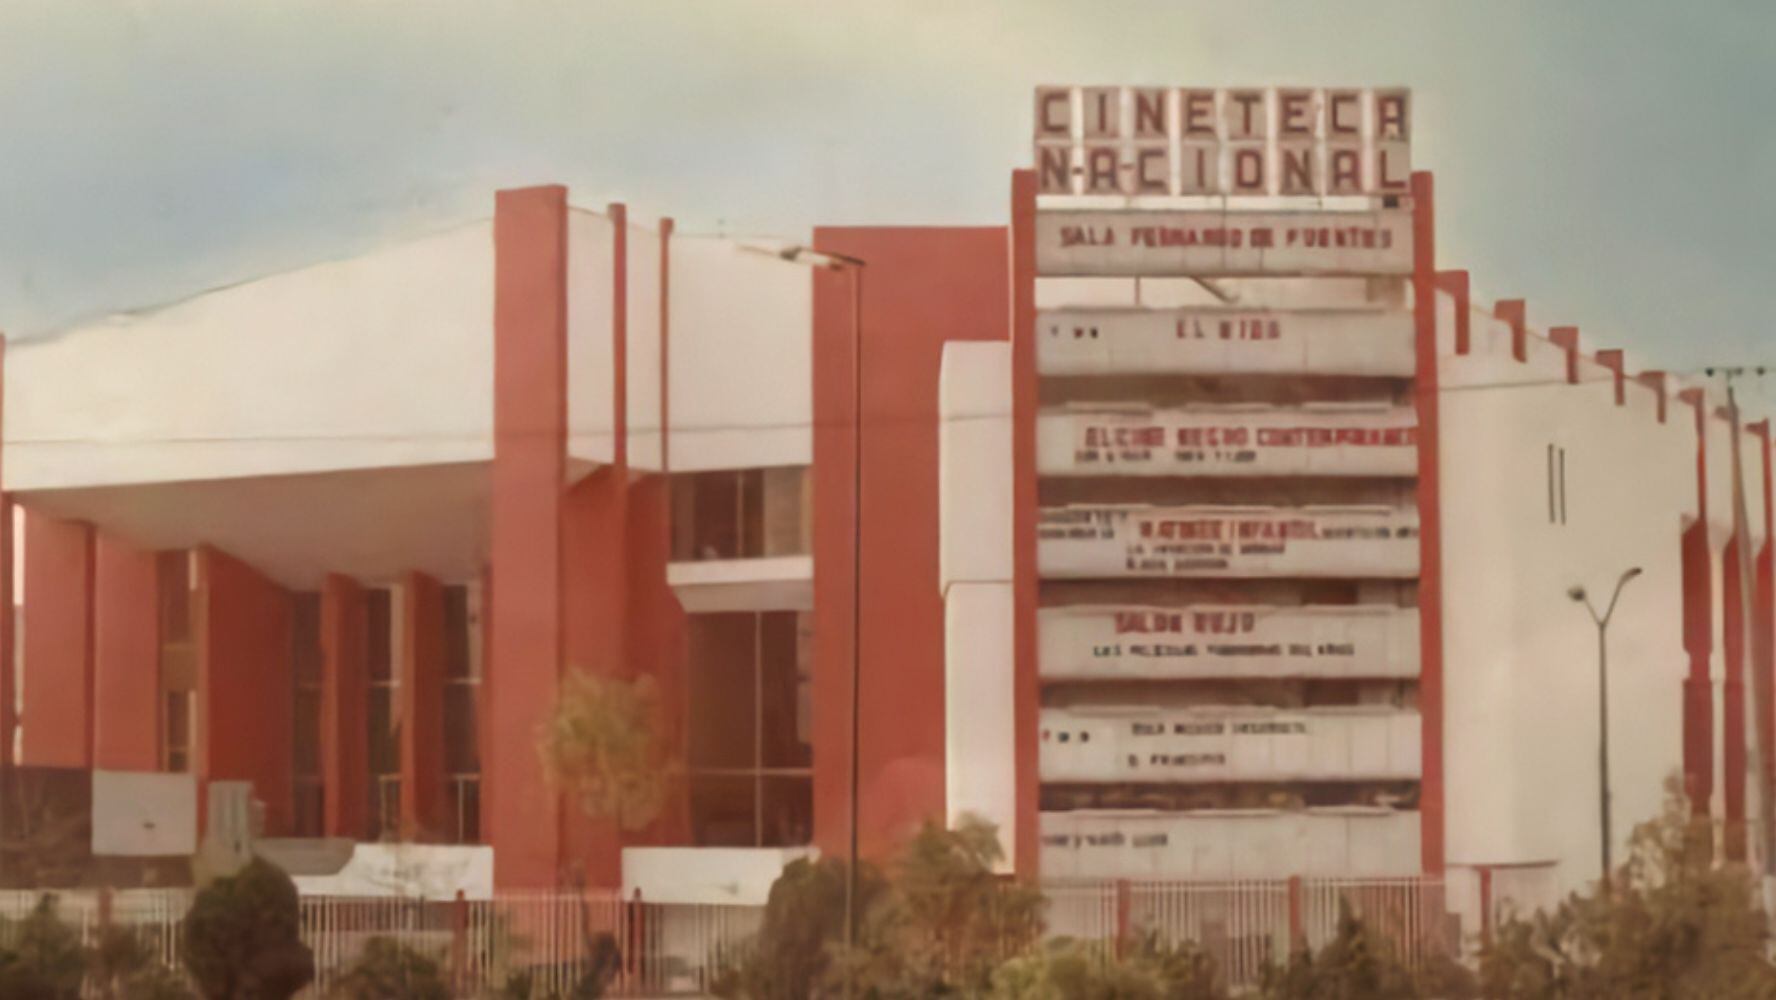 La Cineteca Nacional fue inaugurada en 1974. (Foto: Facebook / @Cineteca Nacional)